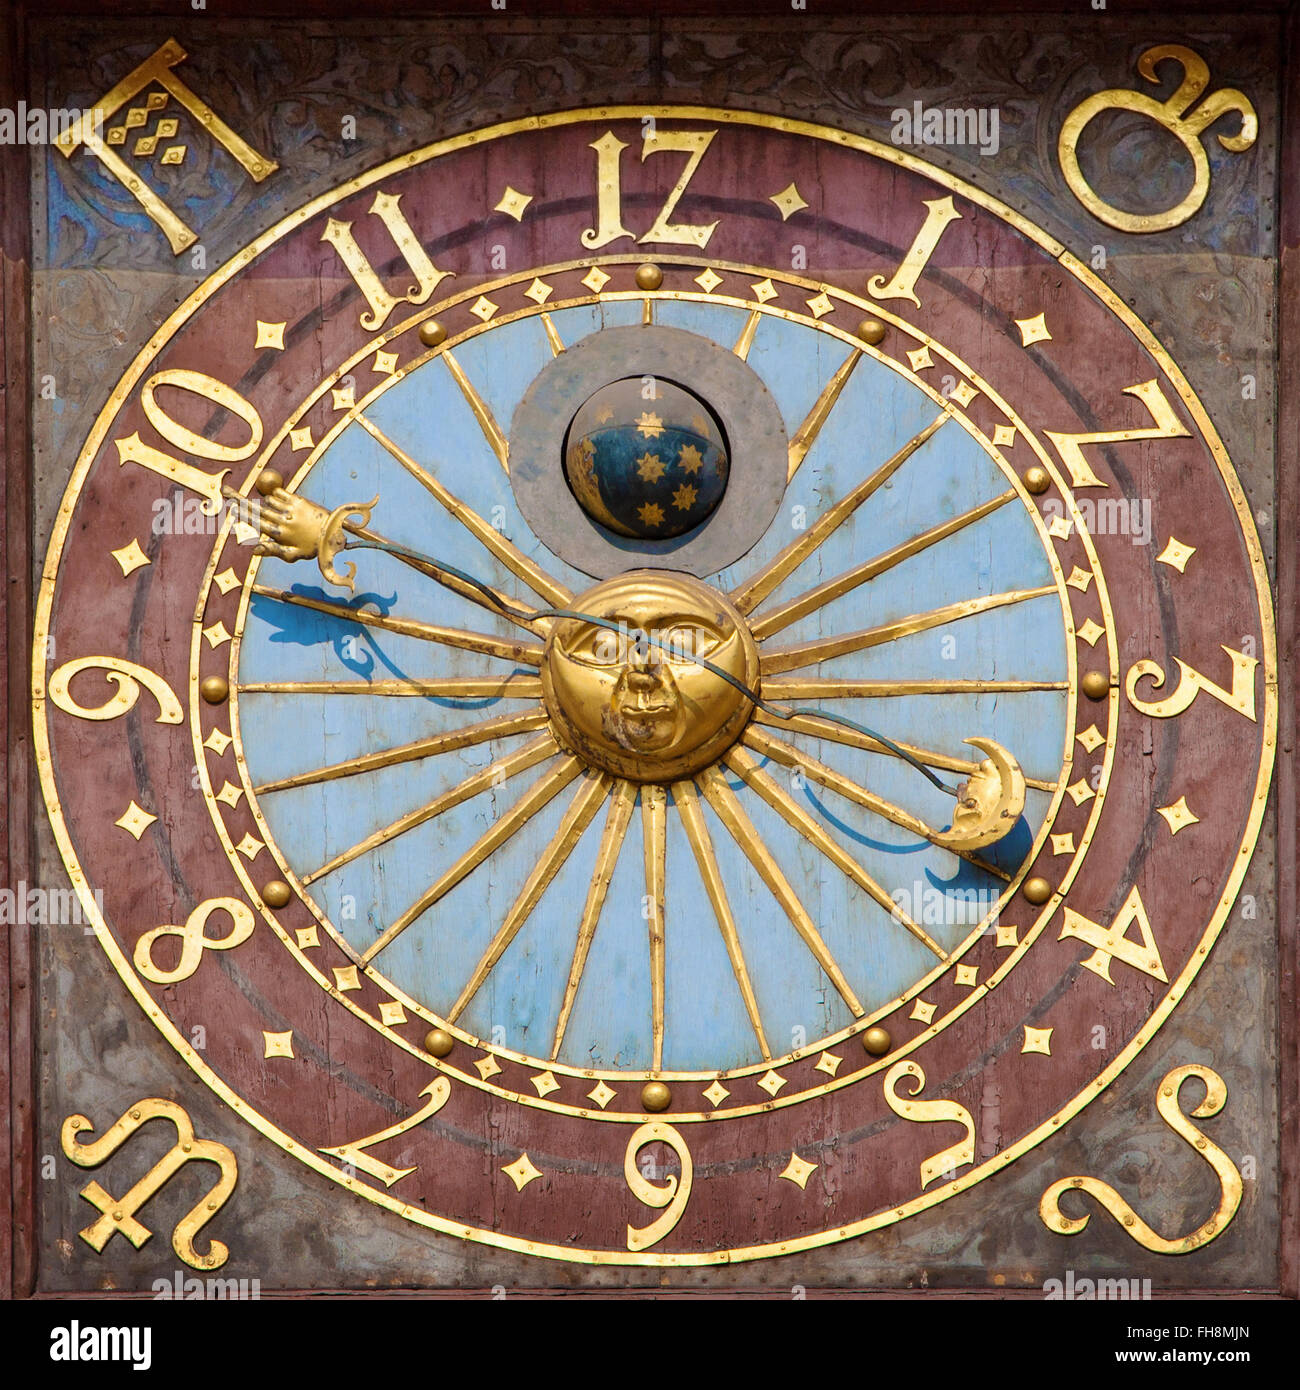 Astronomische Uhr der alten Rathaus in Wroclaw/Breslau, Polen  Stockfotografie - Alamy